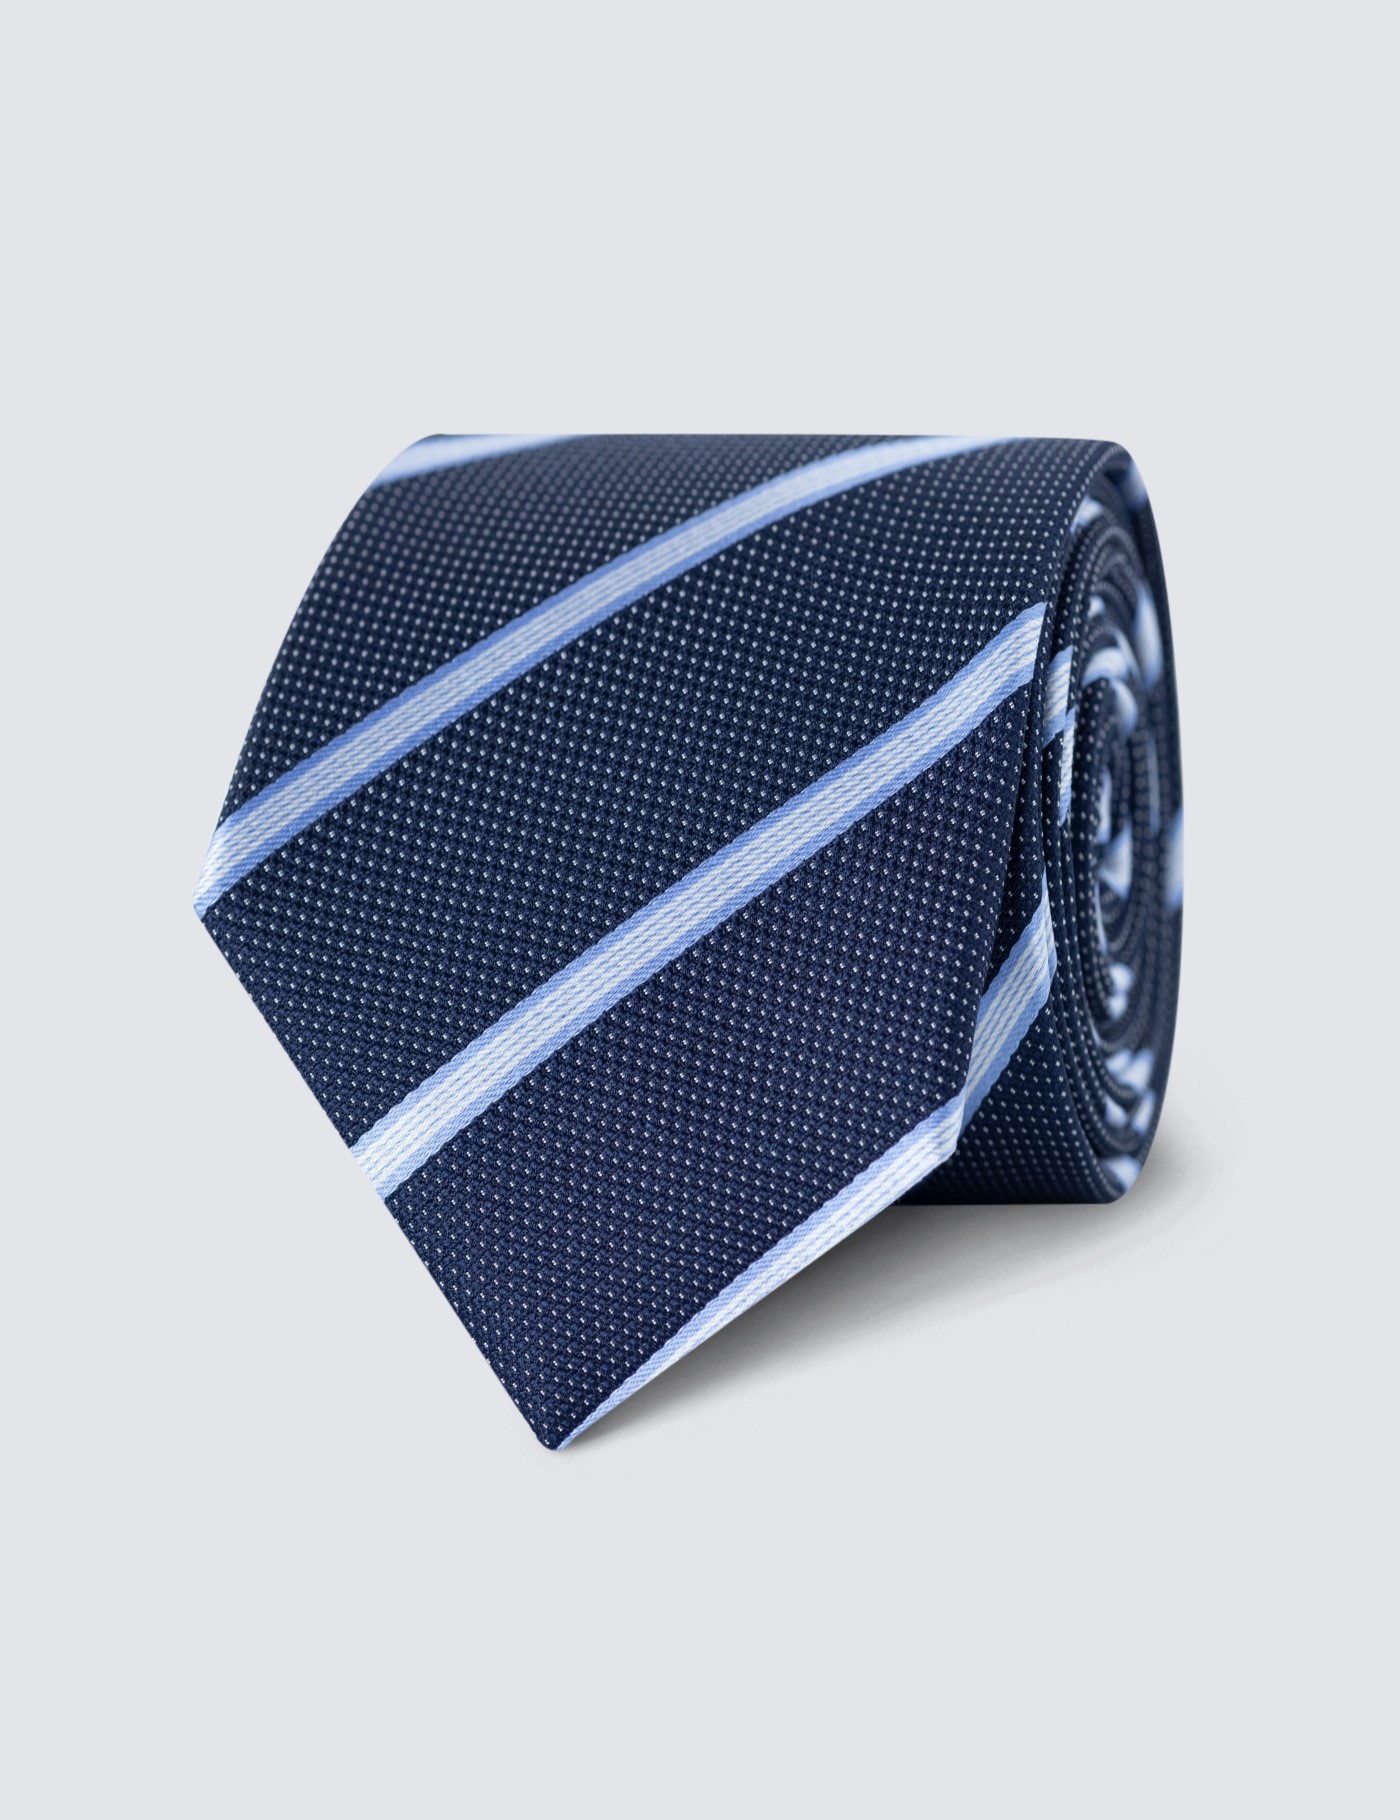 & | – – Curtis Seide Krawatte College Standardbreite blau Streifen Hawes –